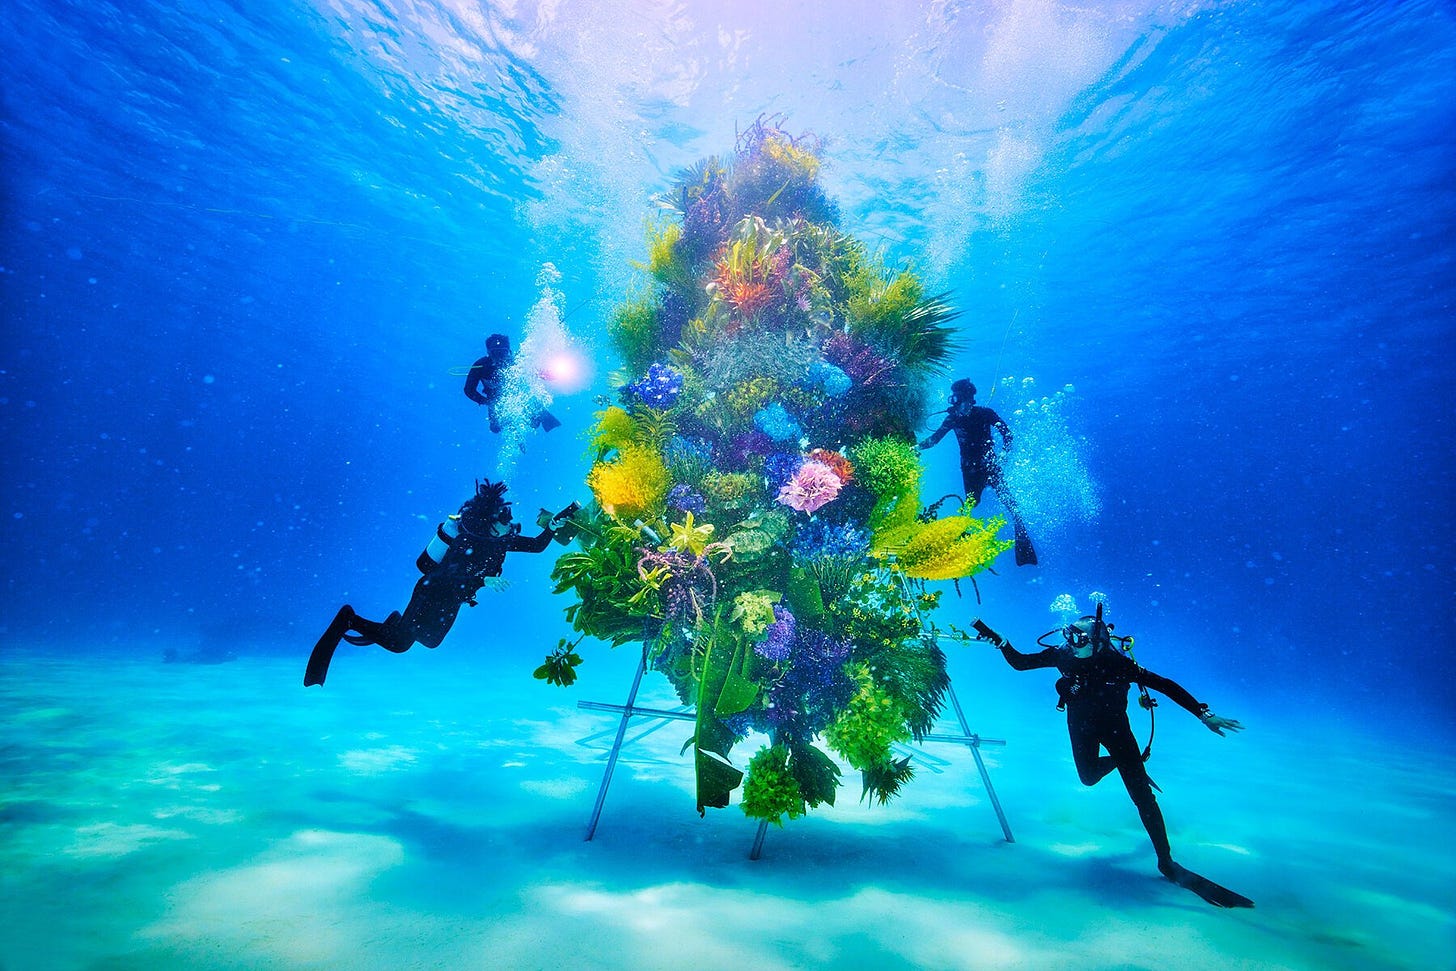 Una scultura floreale posta sott'acqua, con dei sub che le fluttuano intorno.